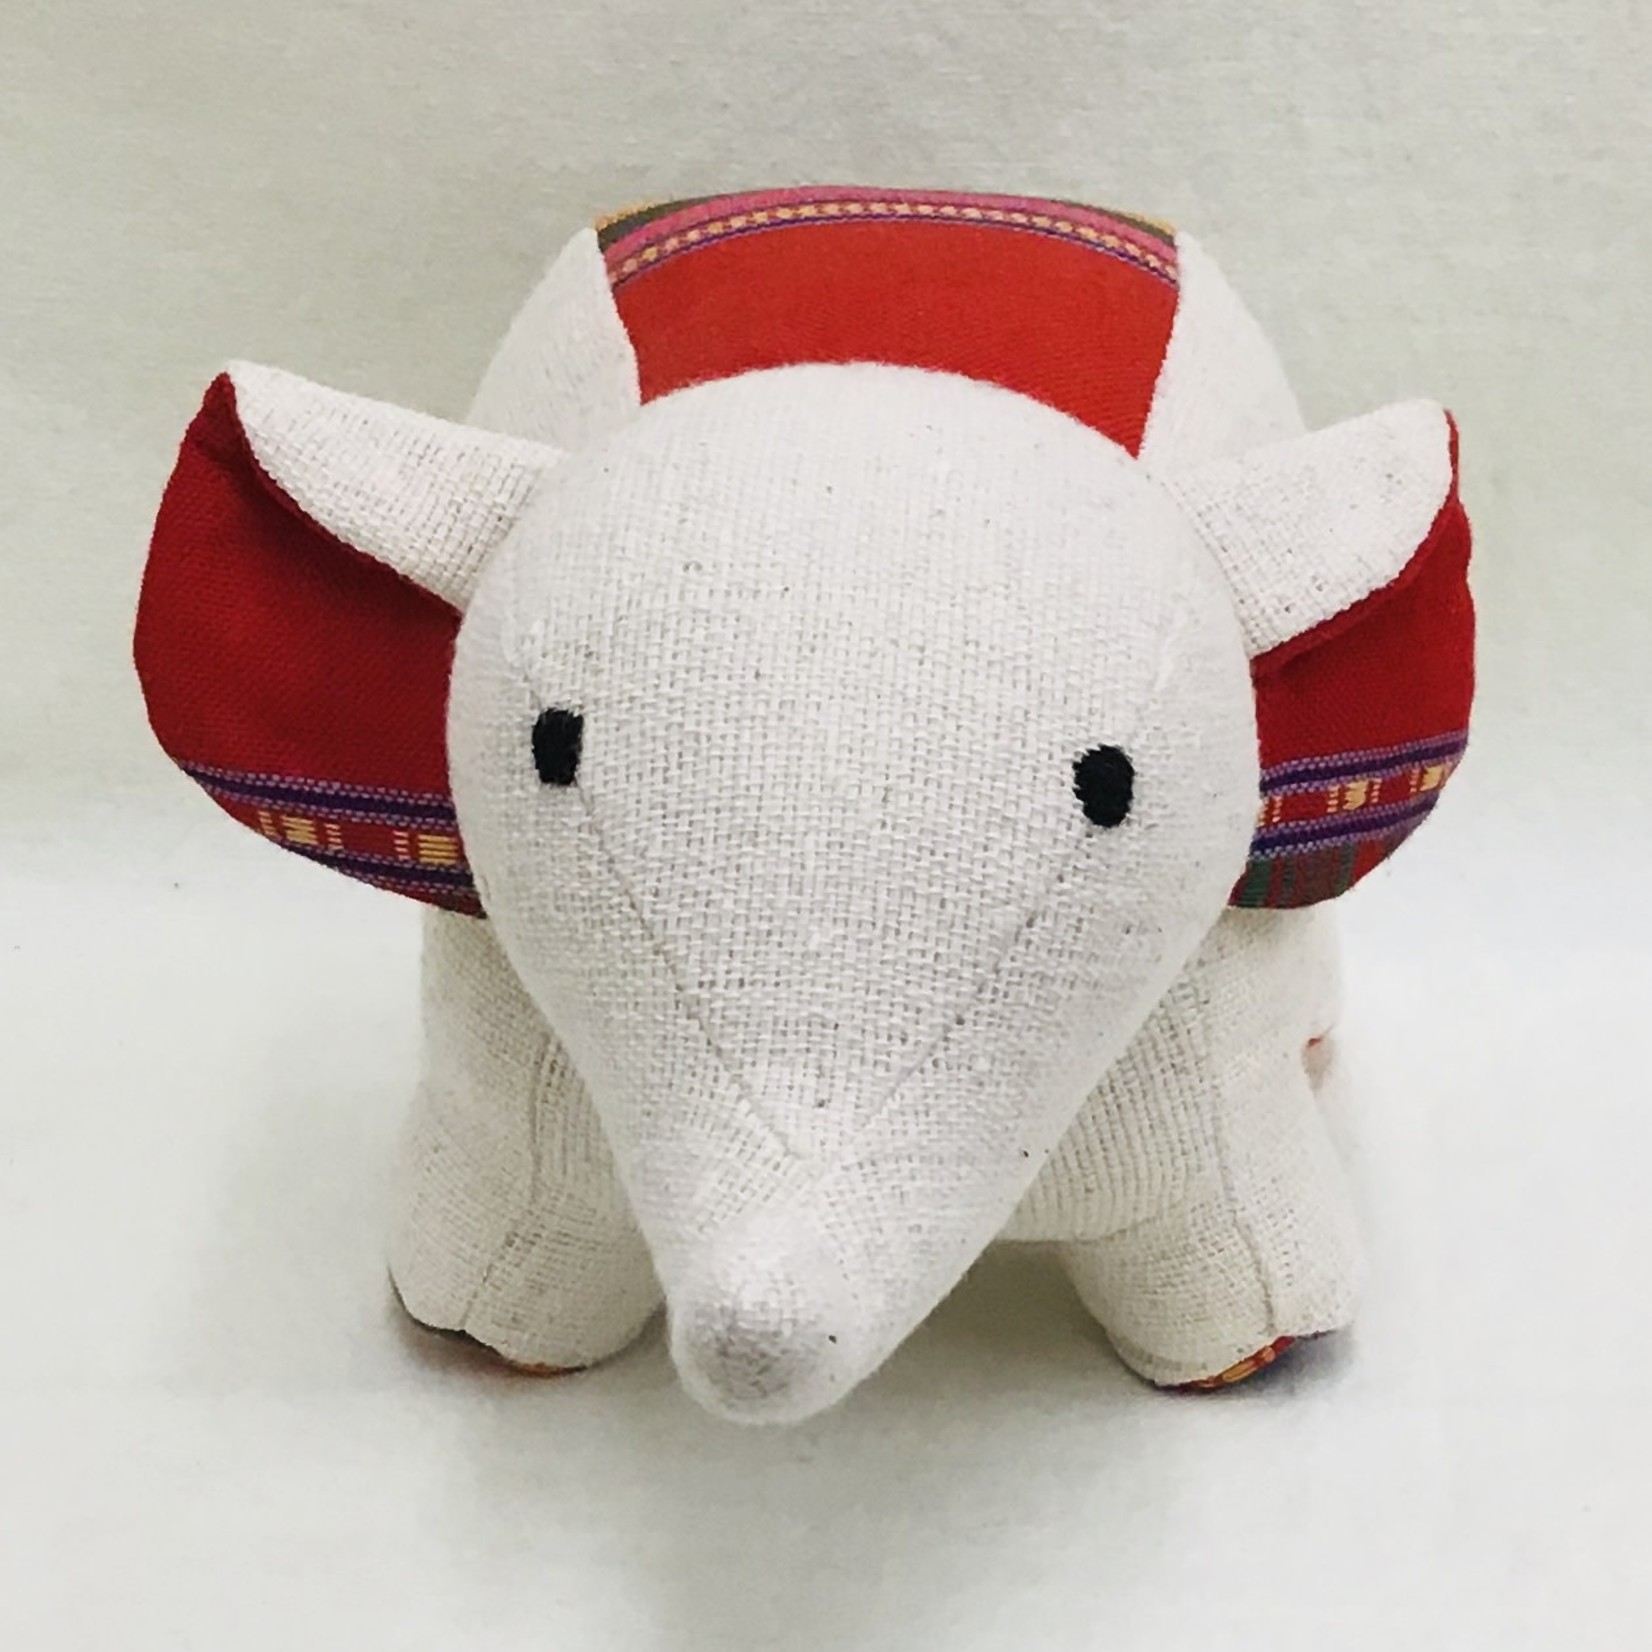 Stuffed Elephant Toy (Large)